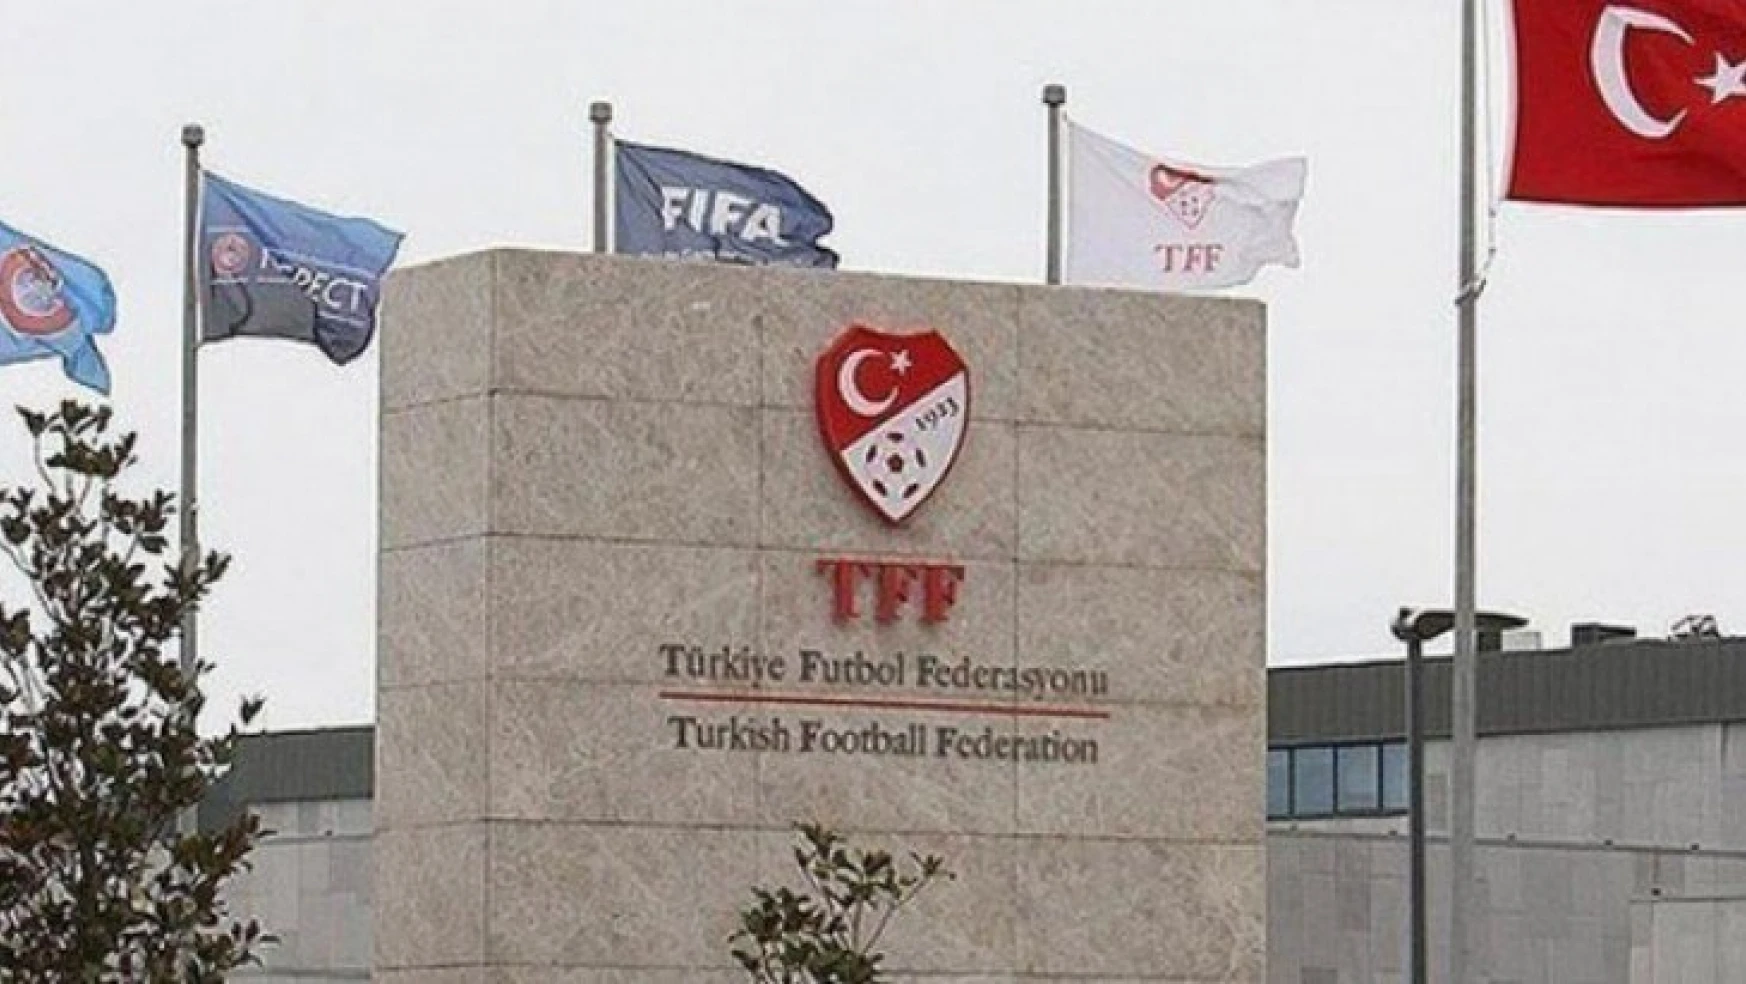 TFF, Süper Lig ekiplerinin harcama limitlerini açıkladı